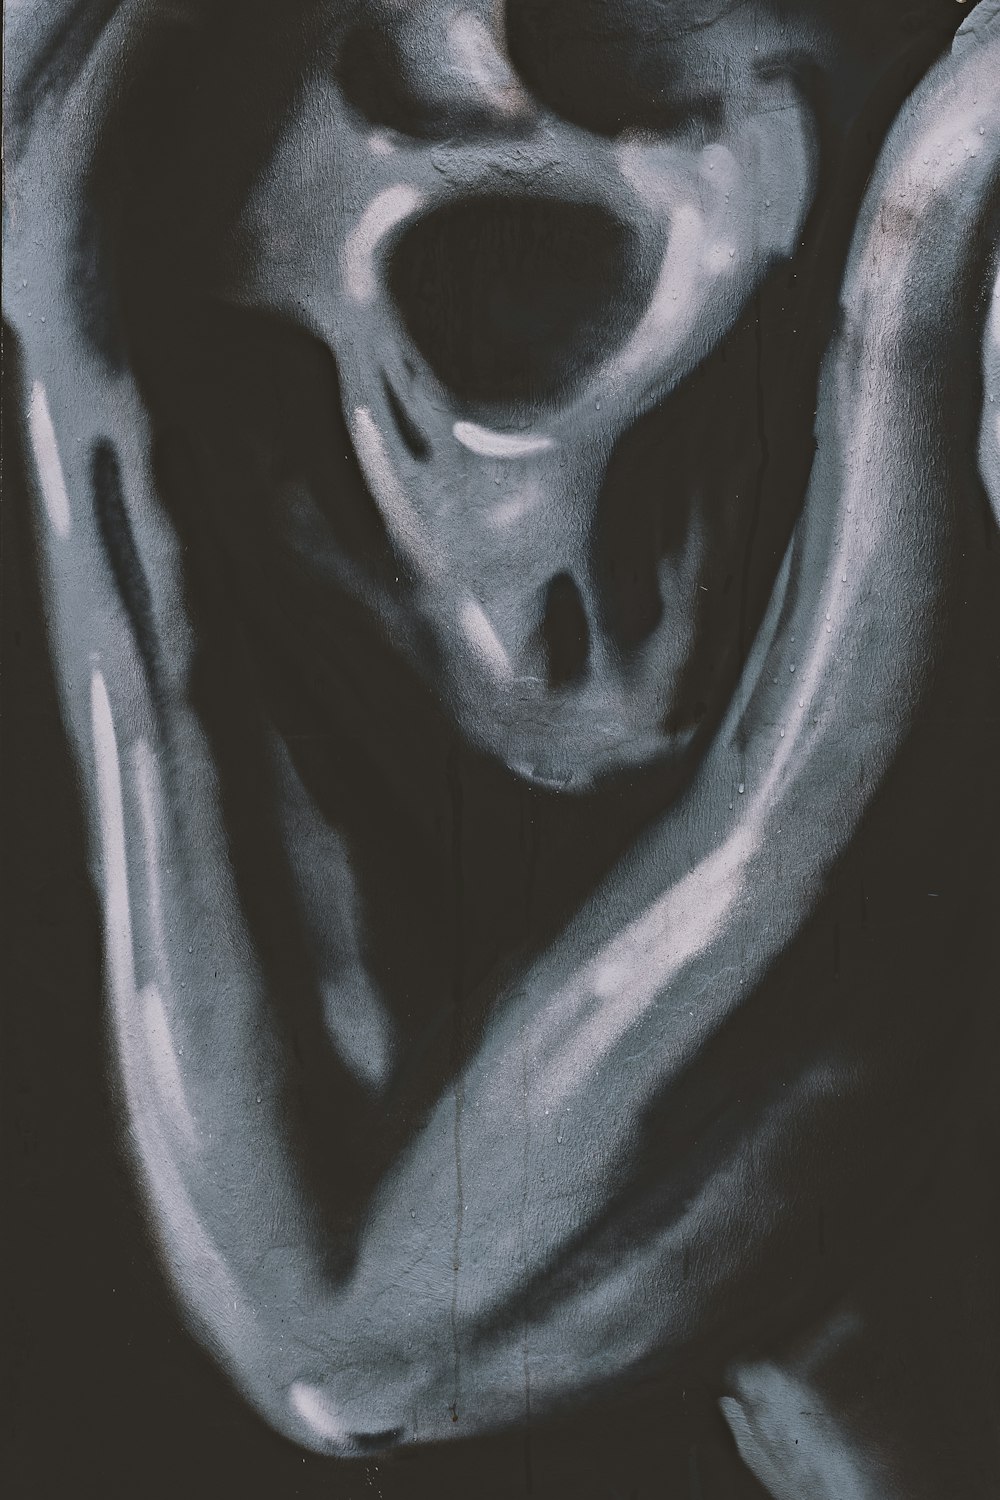 une photo en noir et blanc d’un crâne humain